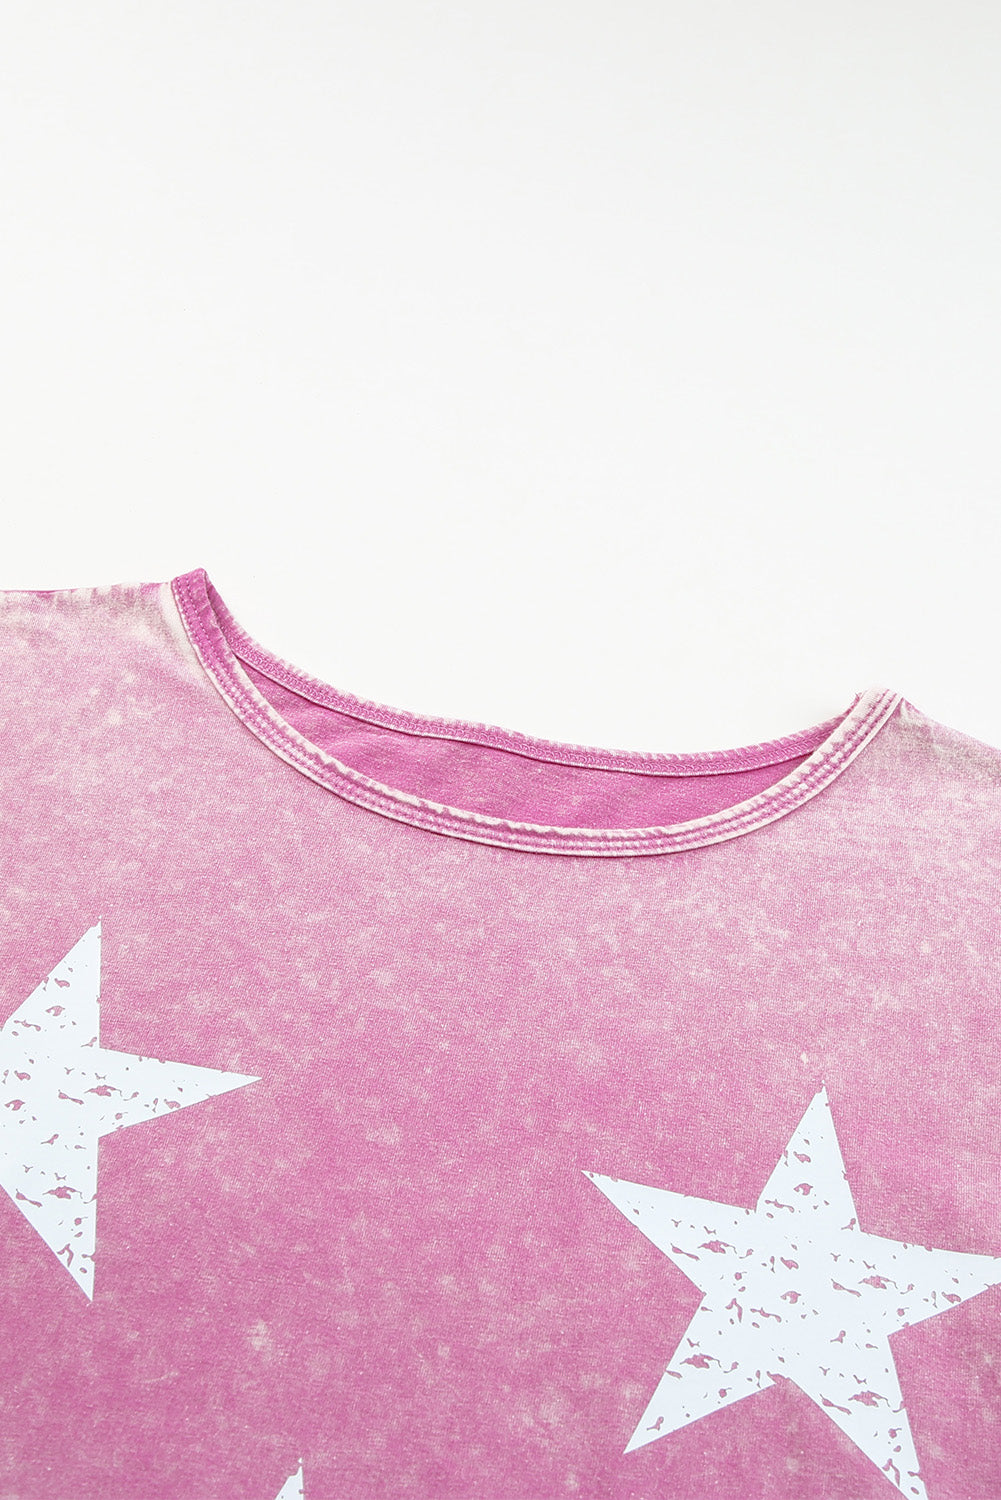 Rožnata majica z grafiko Mineral Wash s starinskim potiskom zvezd